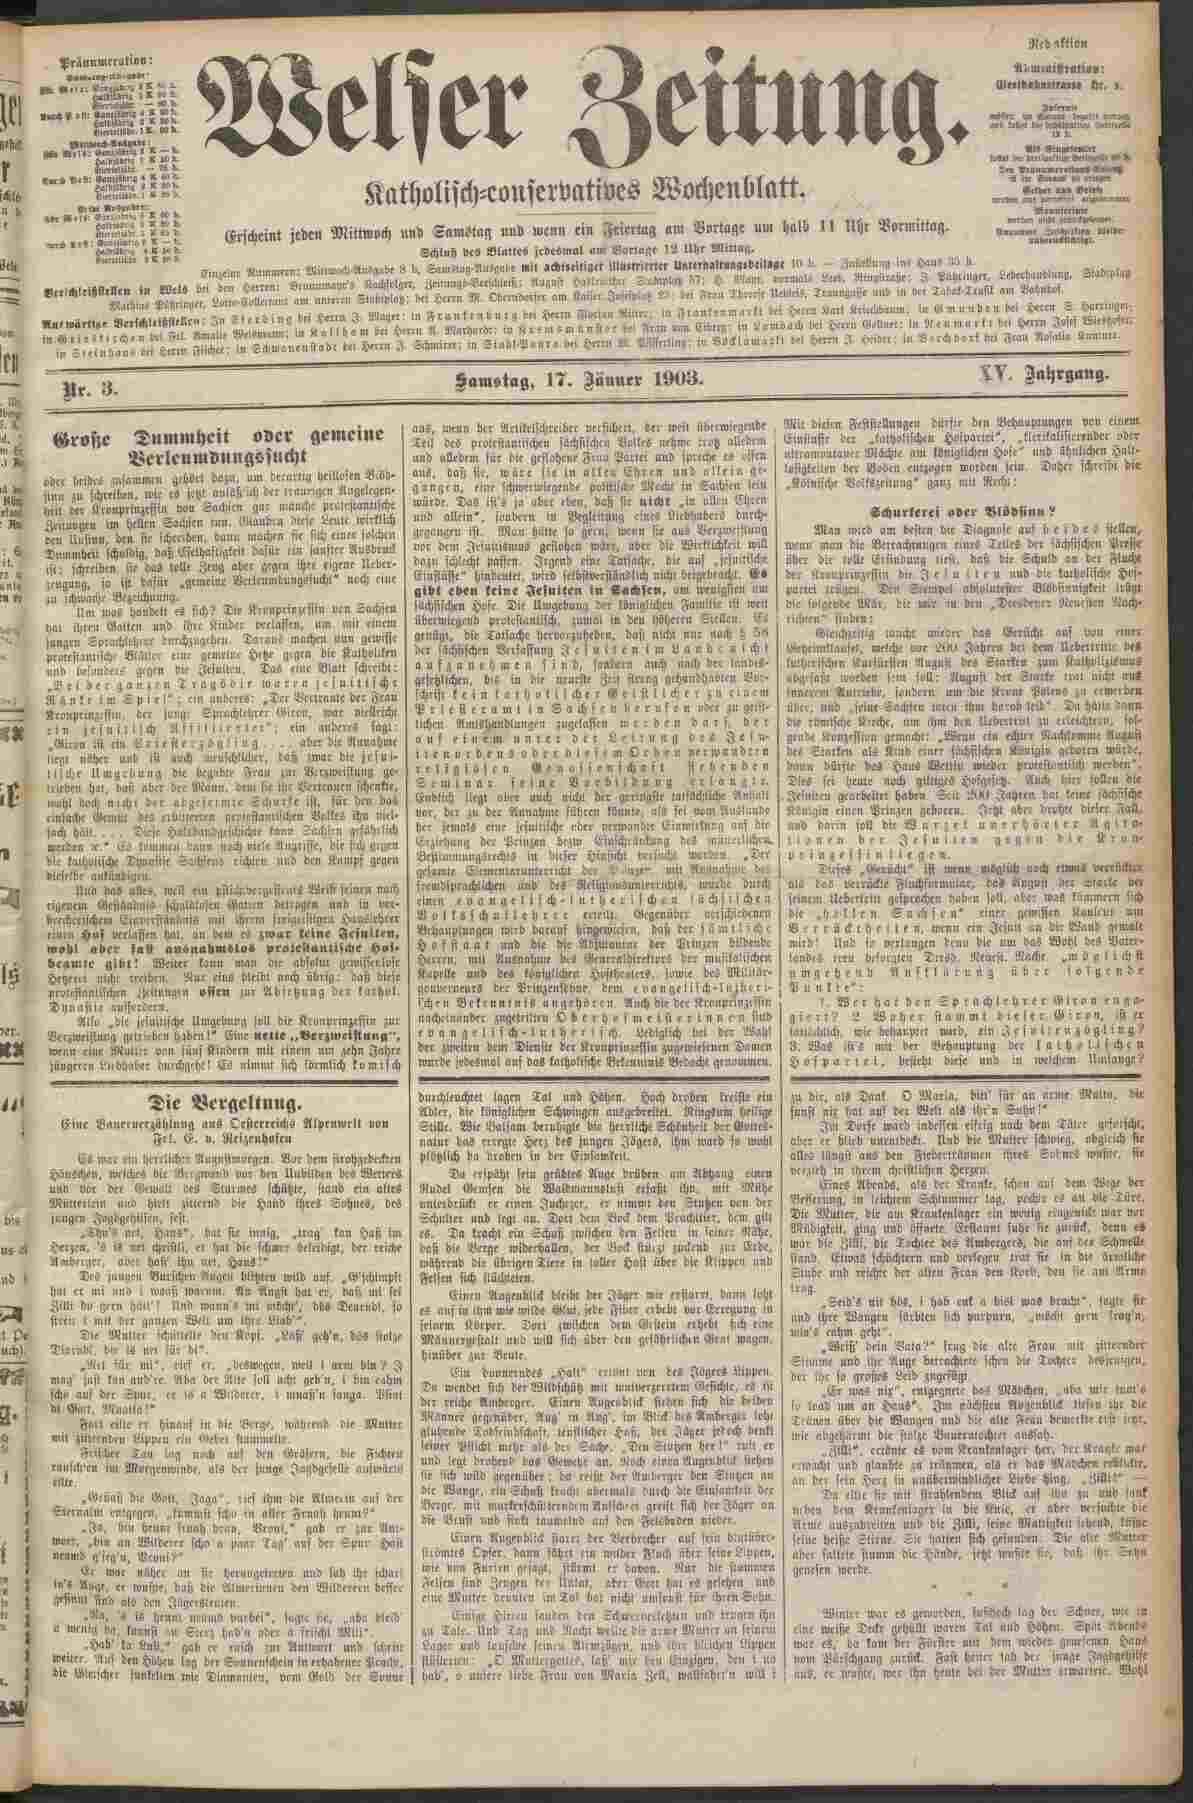 Welser Zeitung, 17.1.1903, S.1, ANNO/ÖNB